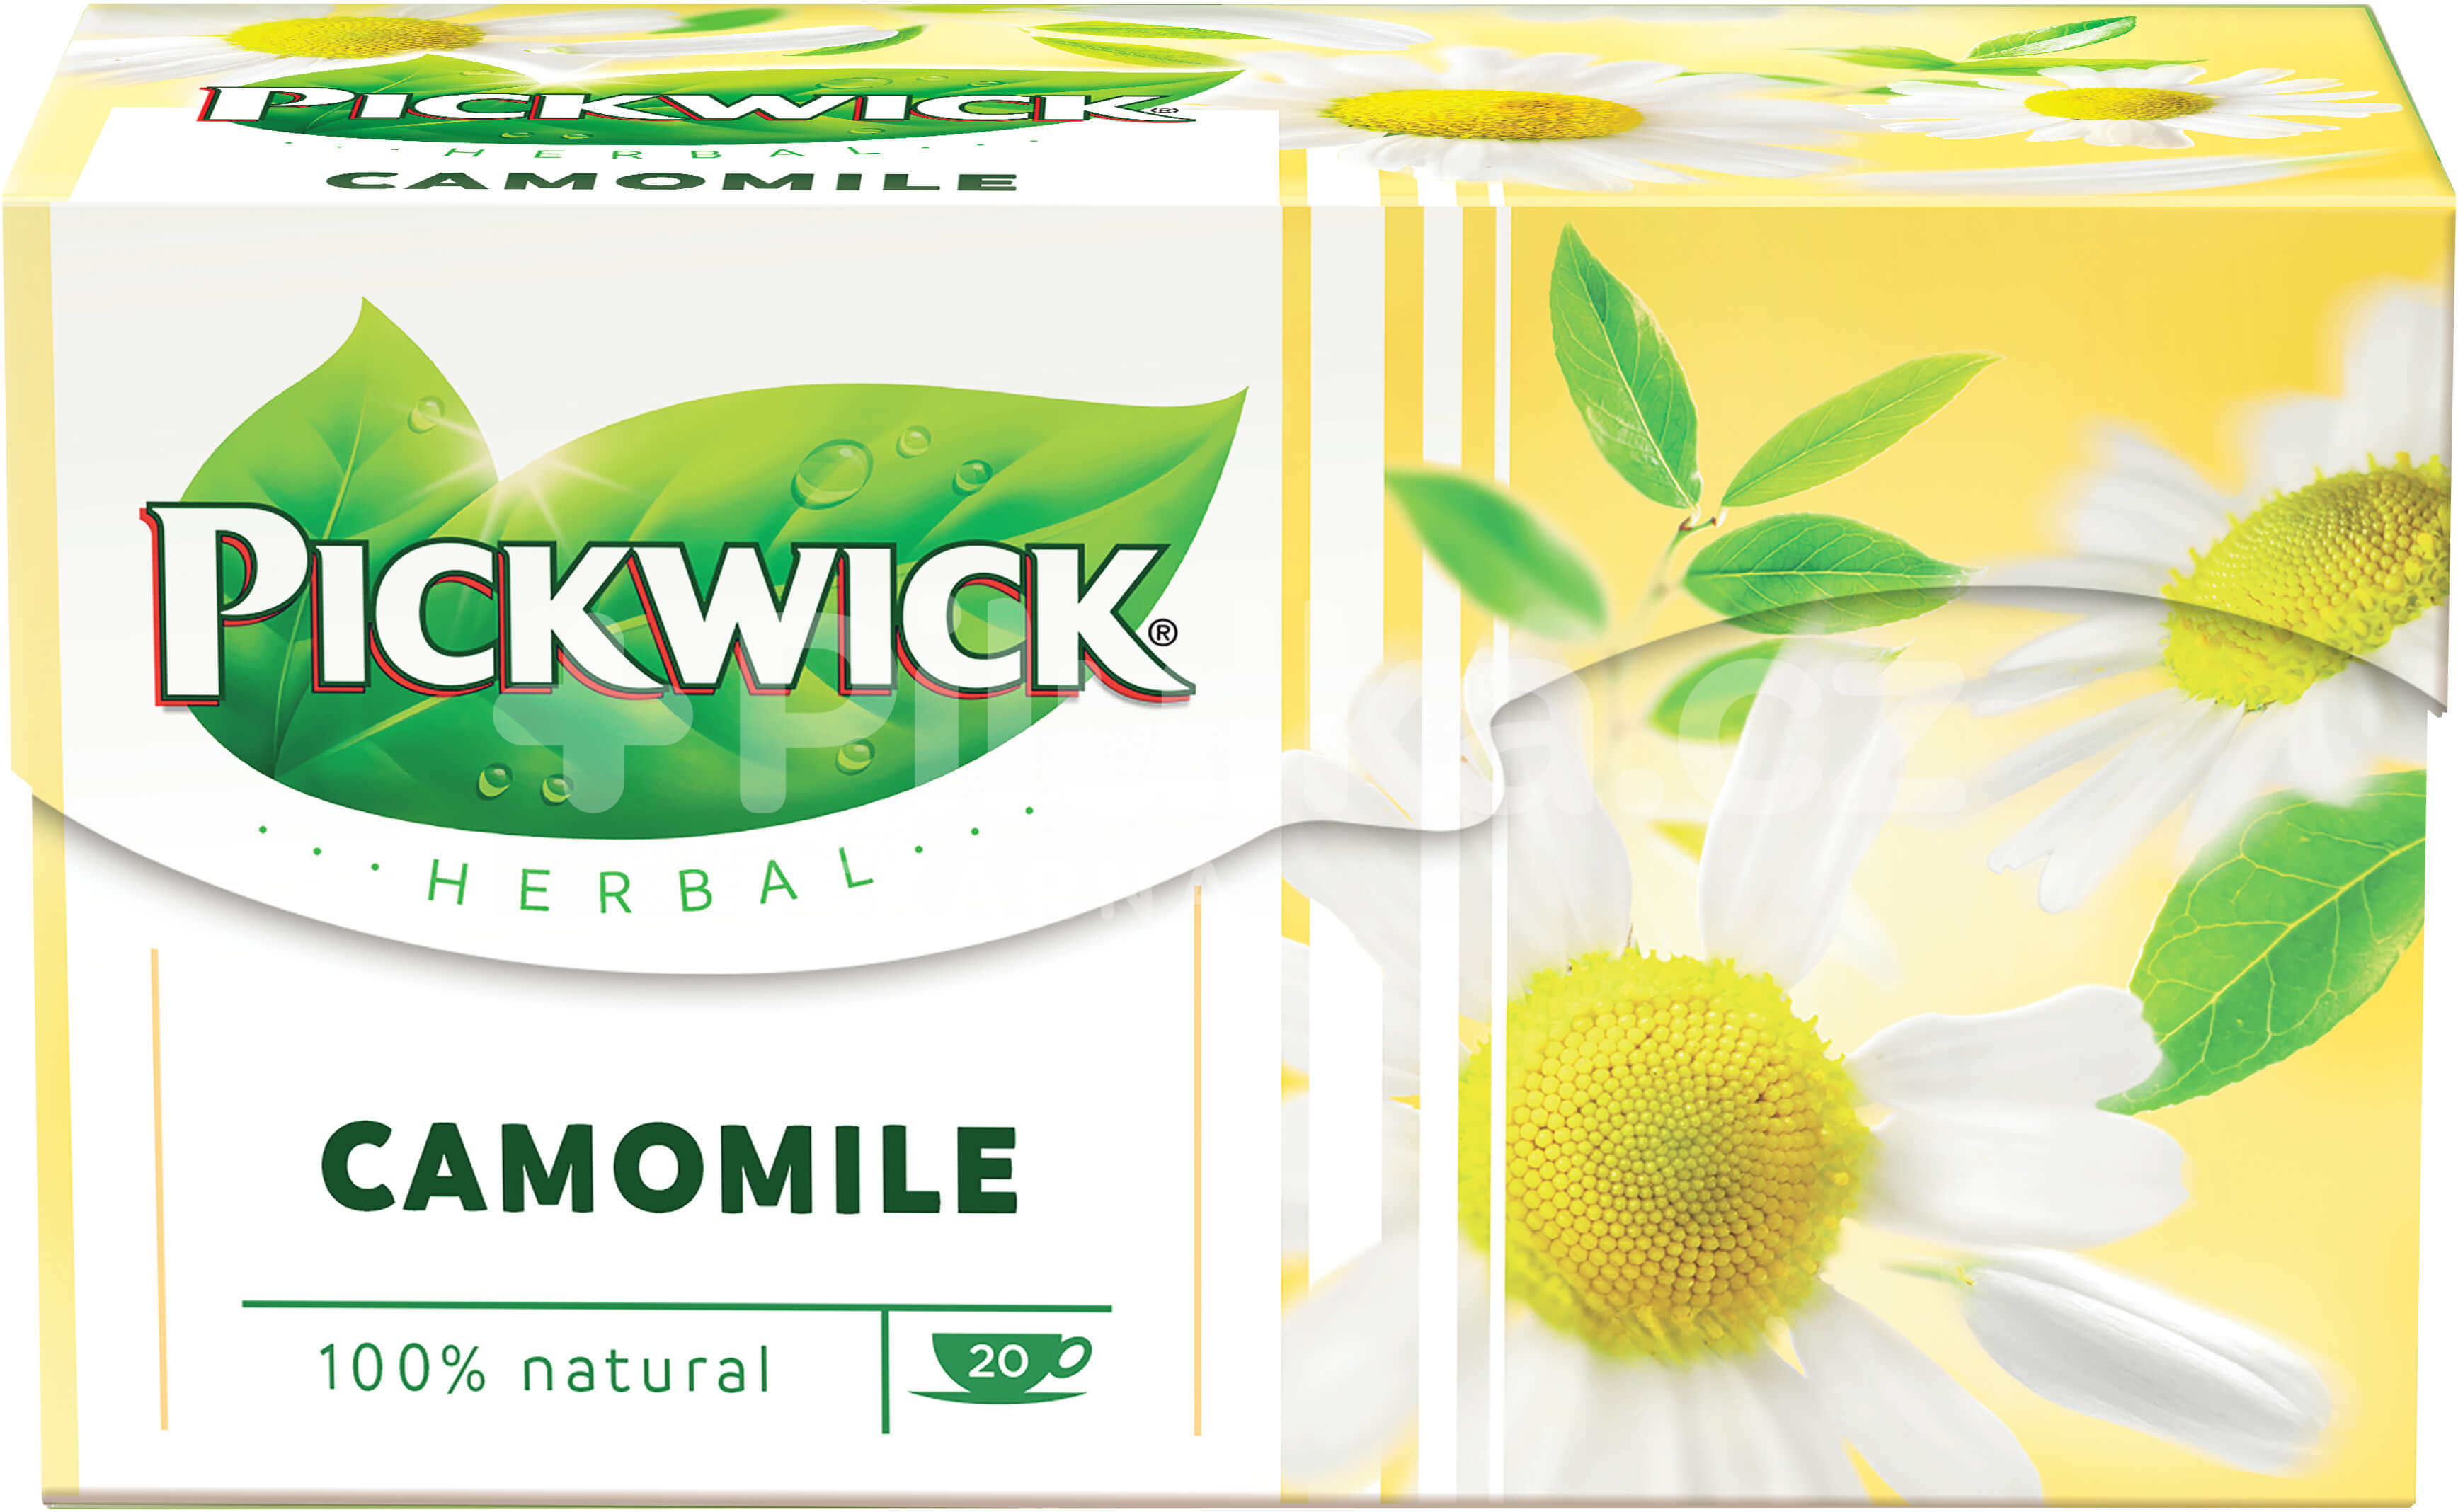 ชาคาโมมายล์ Pickwick Herbal Camomile 100% natural บรรจุ 20 ซอง(1.5กรัม/ซอง) ปราศจากคาเฟอิน ช่วยให้หลับสบาย